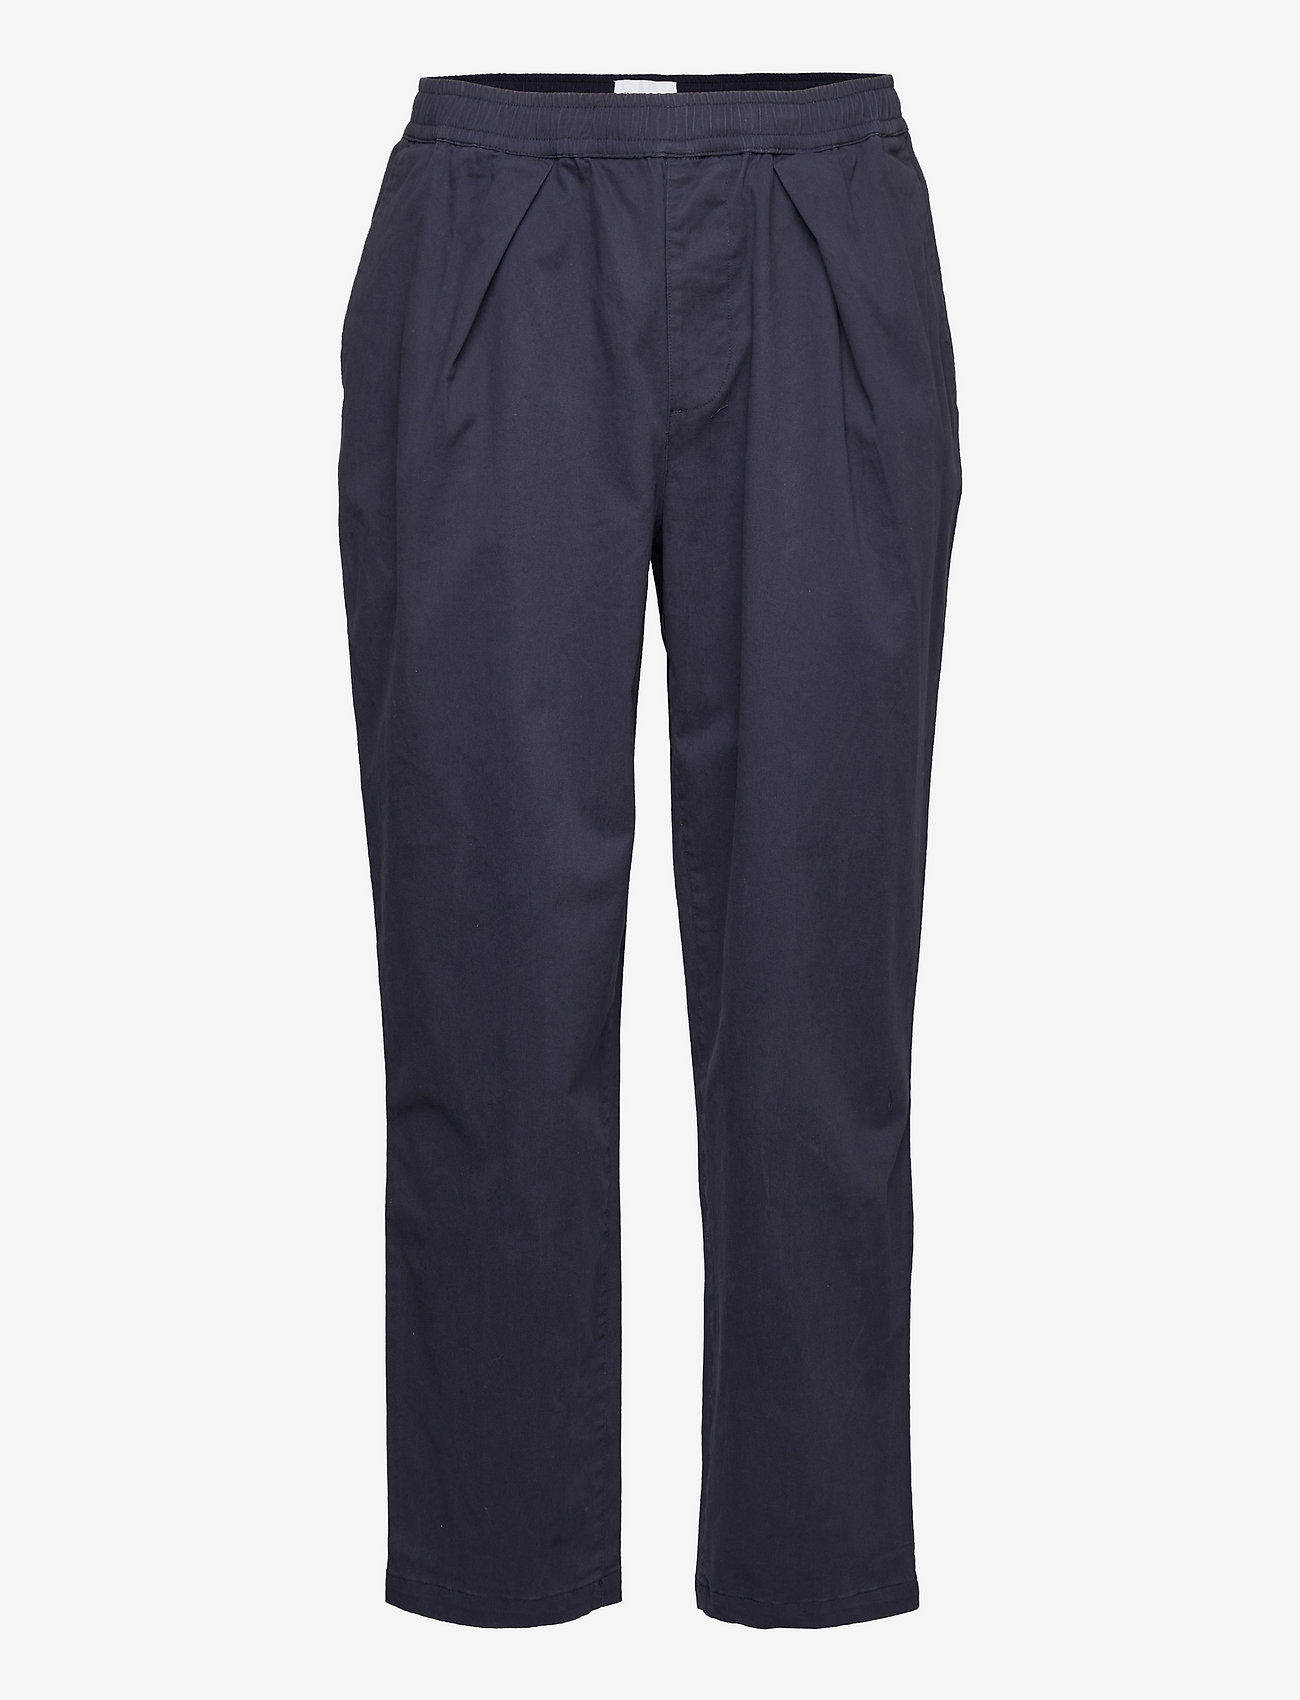 WEARECPH - Levi Pants 3150 - suit trousers - navy - 0